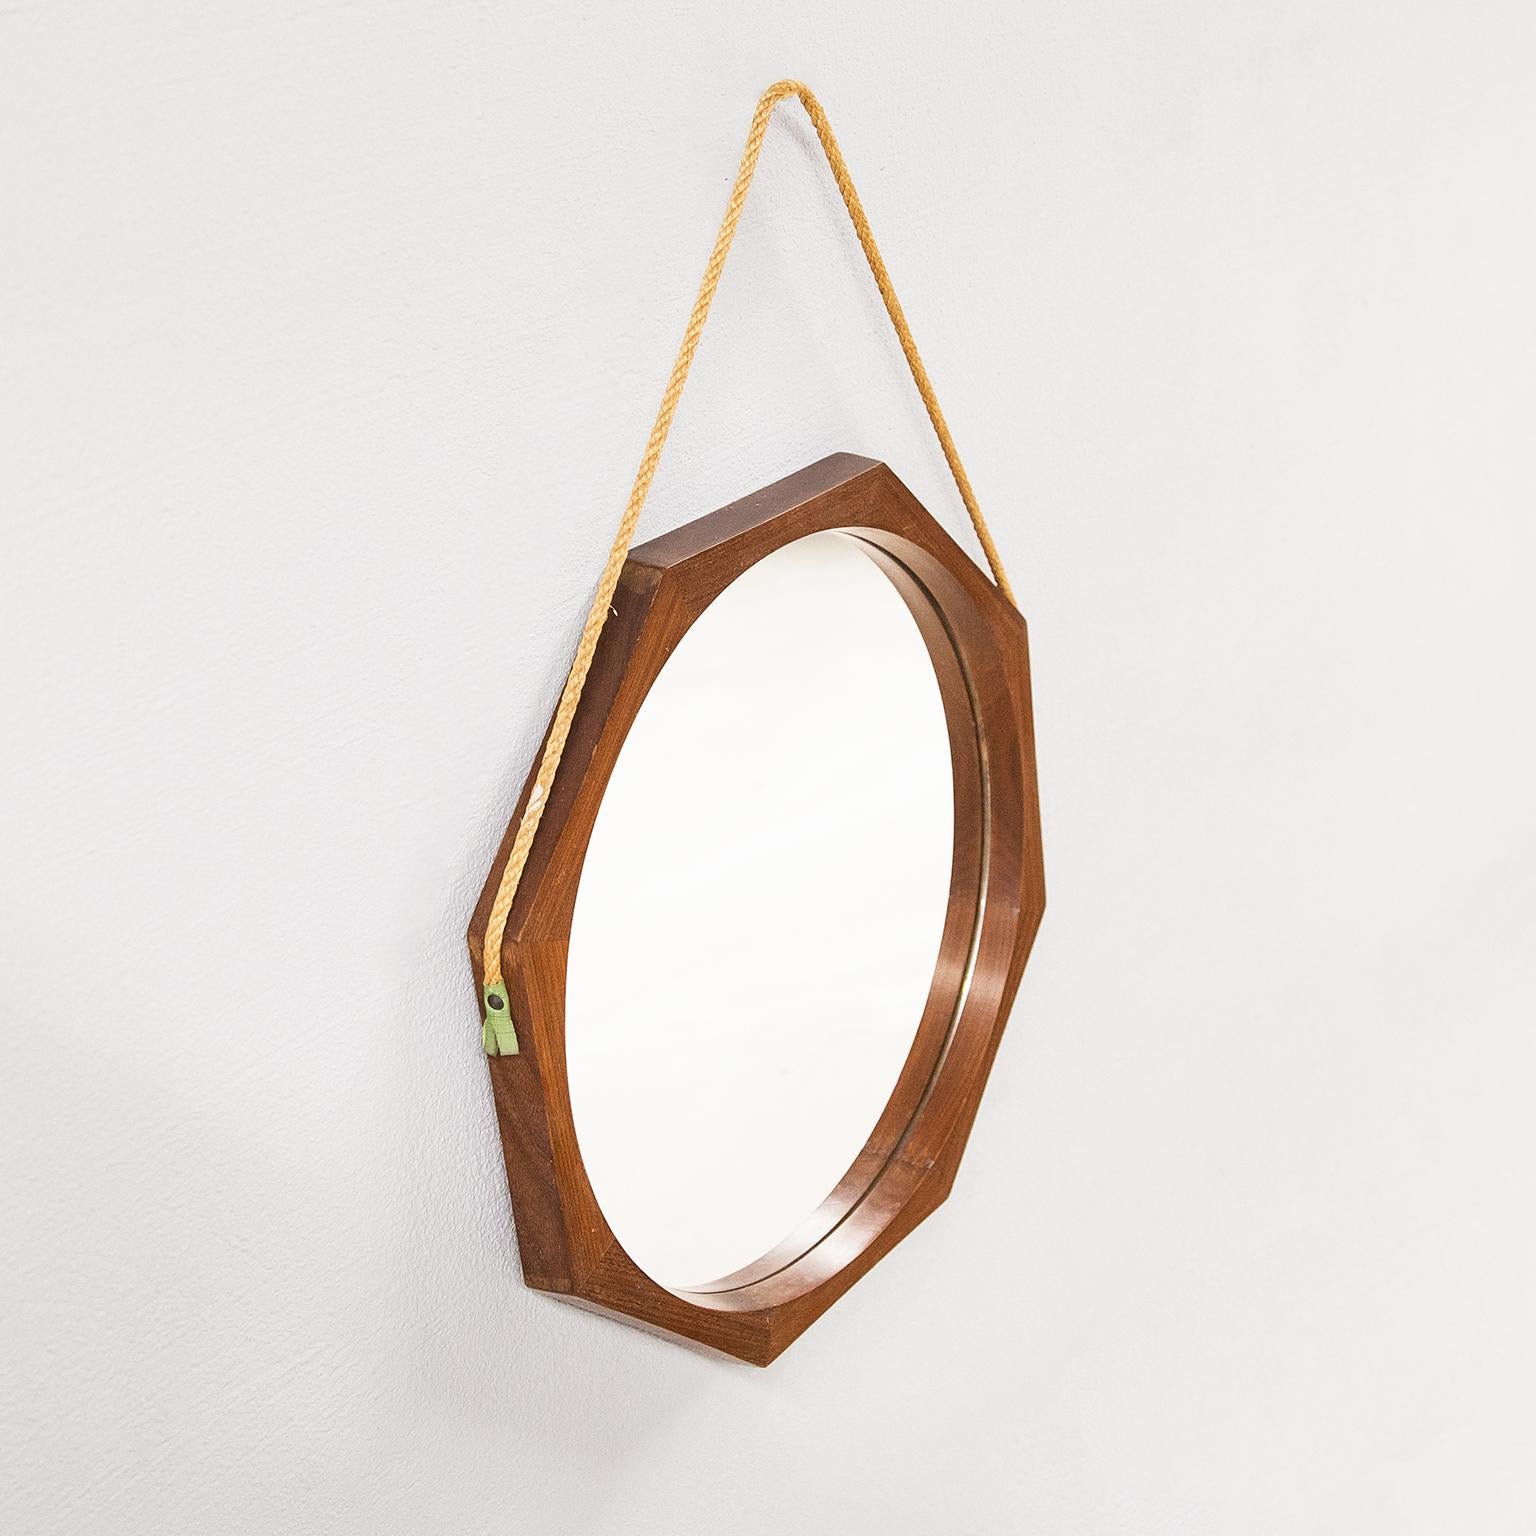 Miroir octogonal attribué à Campo et Carlo Graffi pour le fabricant italien HOME dans les années 1960. Fabriqué en teck avec un jeu évident de joints où l'habileté et le grand savoir-faire artisanal sur la coupe du bois est dénoté .
Ce qui le rend